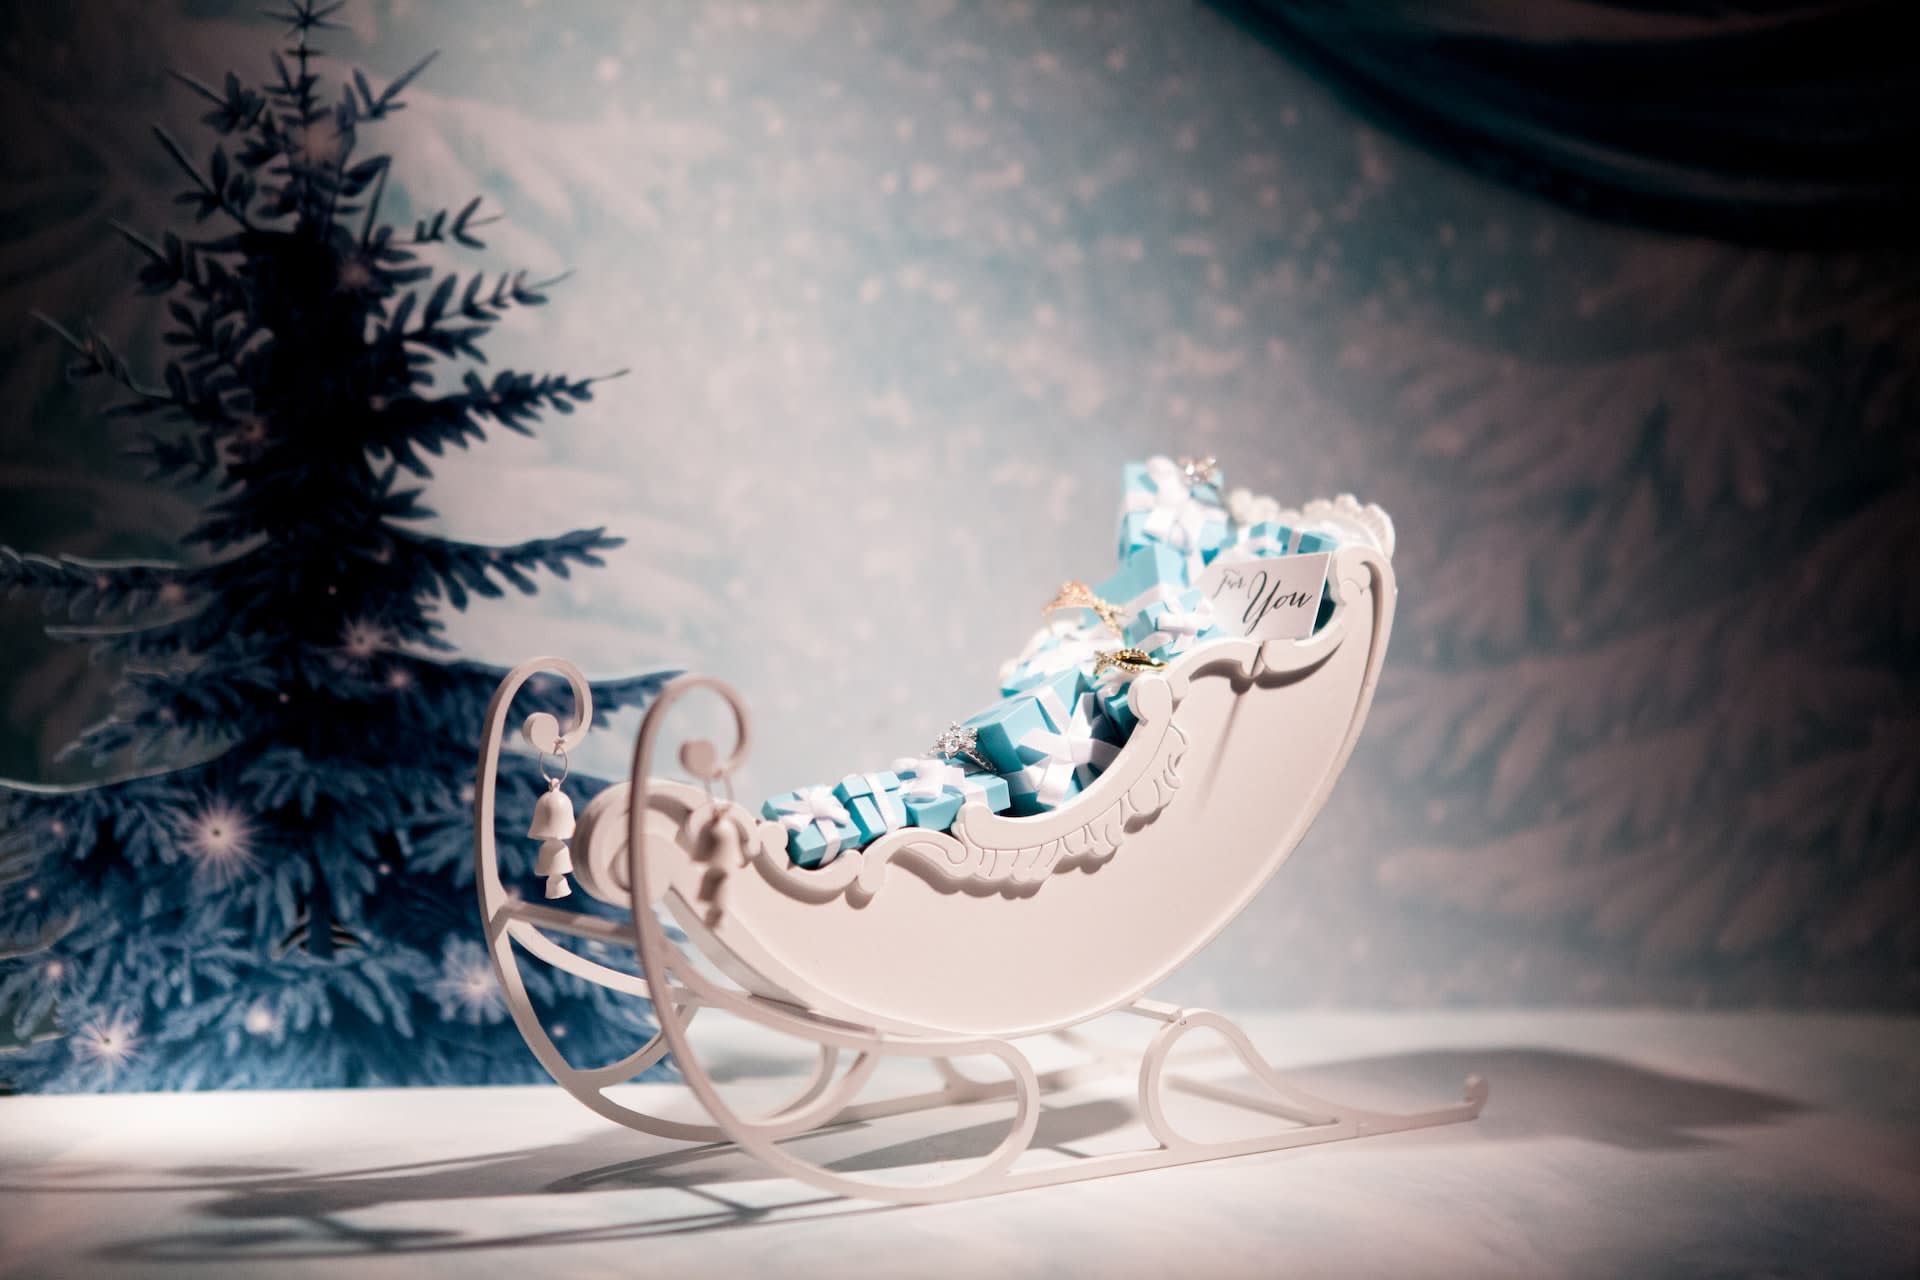 White decorative Santa sleigh ornament